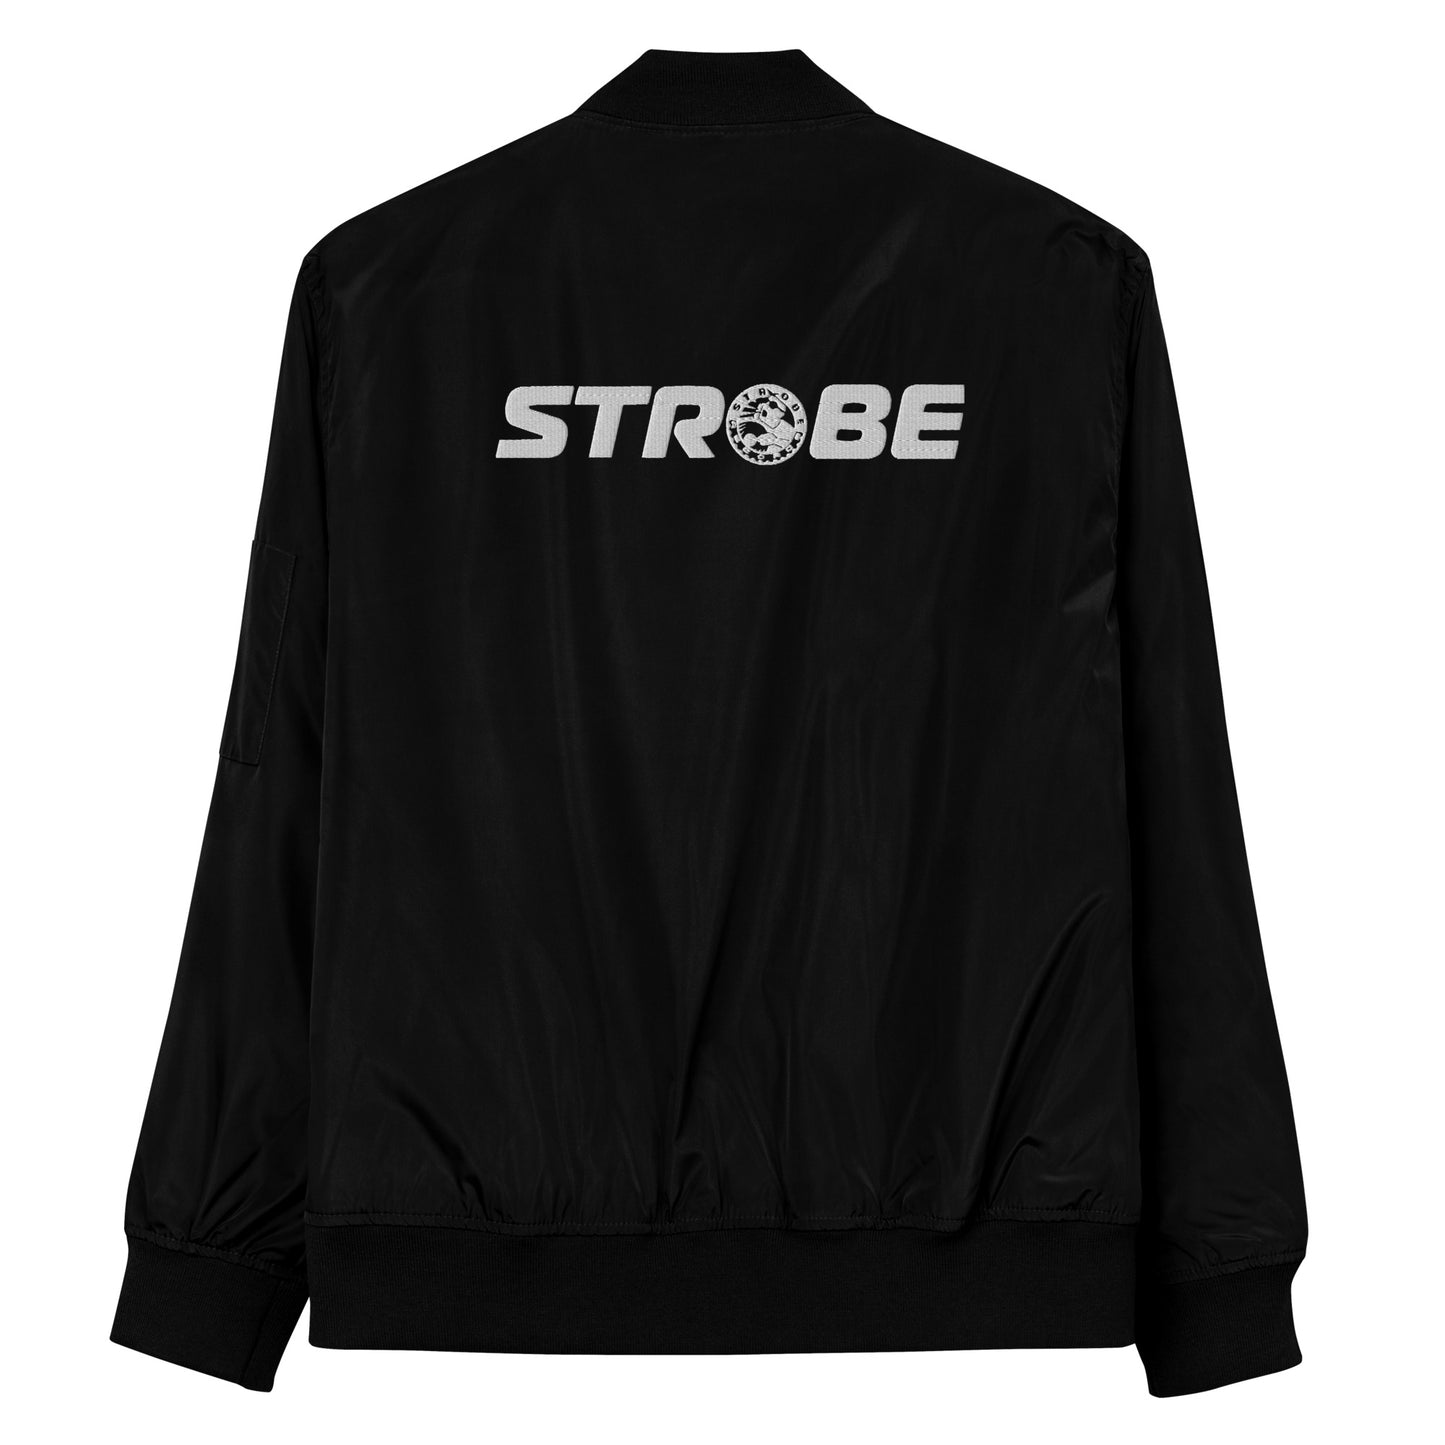 Strobe Records Premium Classic Horizon Bomber Jacket